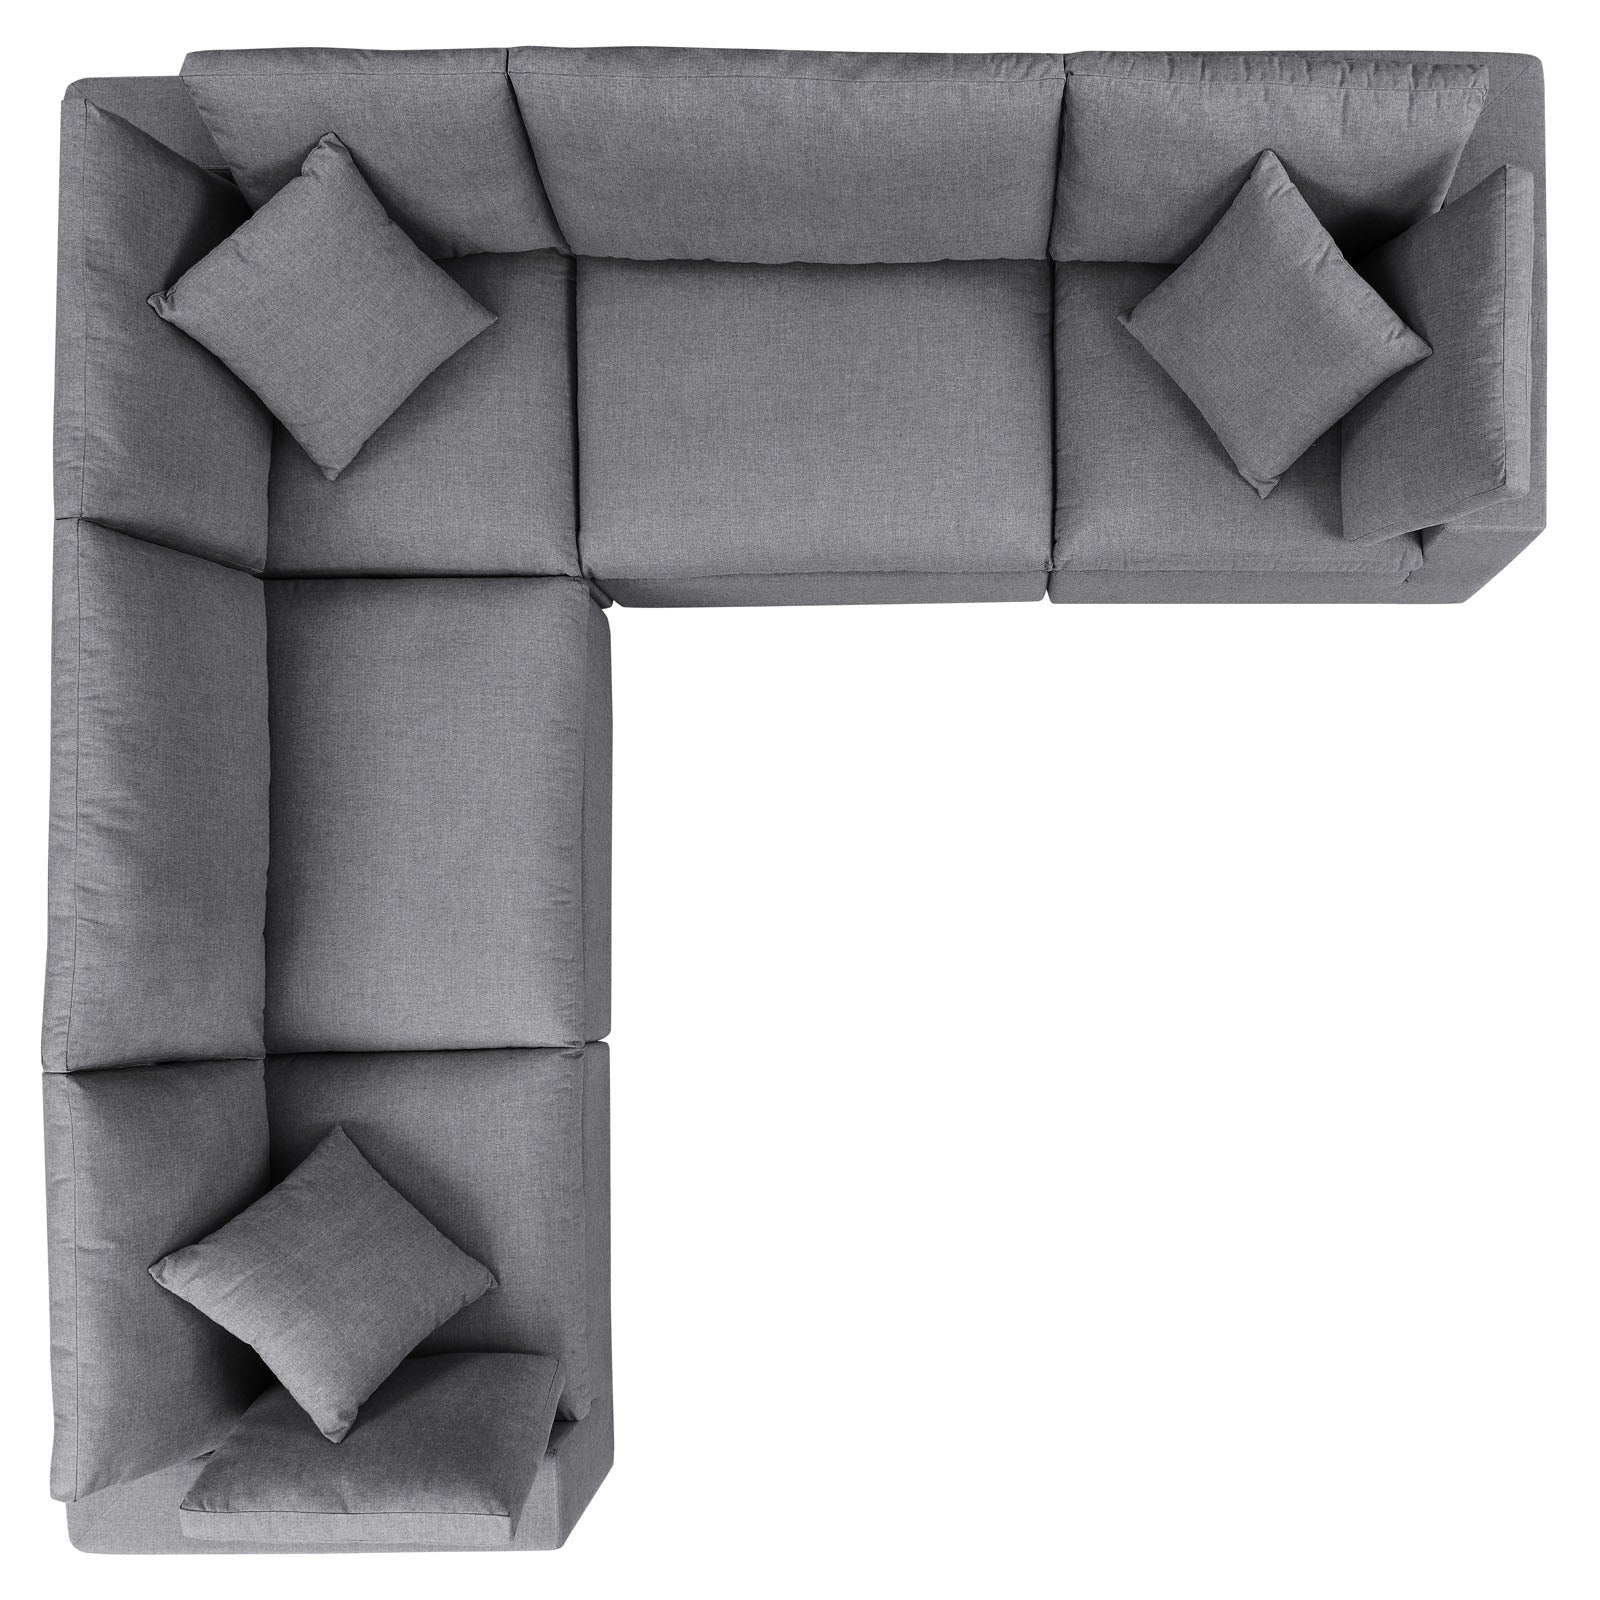 Modway Outdoor Sofas - Commix 5-Piece Sunbrella Outdoor Patio Sectional Sofa Gray